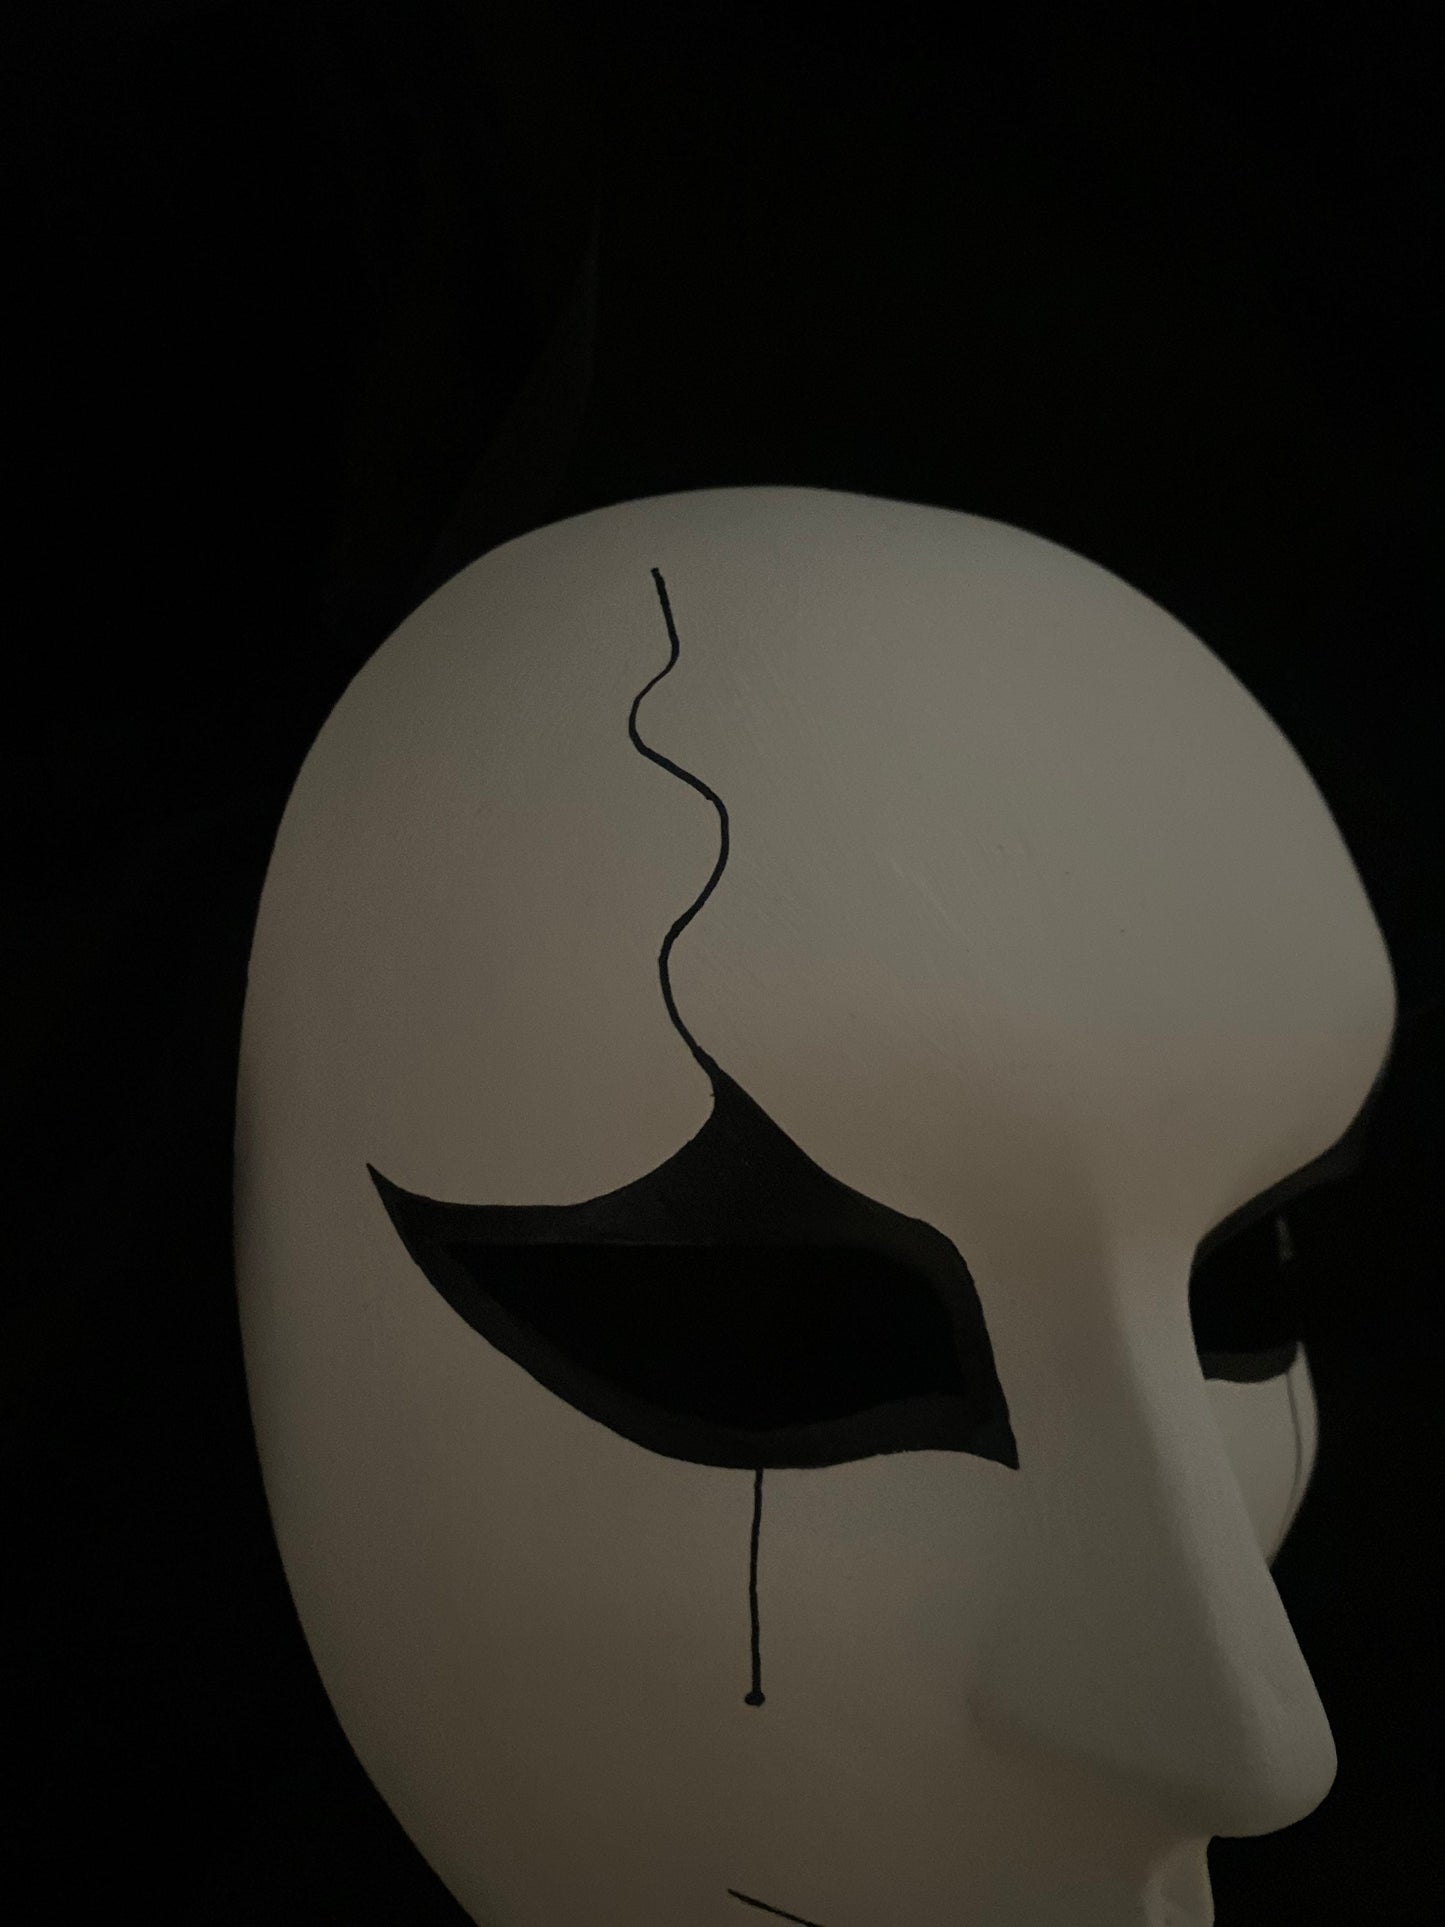 Edición limitada Cara de Pierrot Máscara veneciana original hecha a mano Ideal para fiesta de Halloween Máscara de Pierrot única: Expresión única